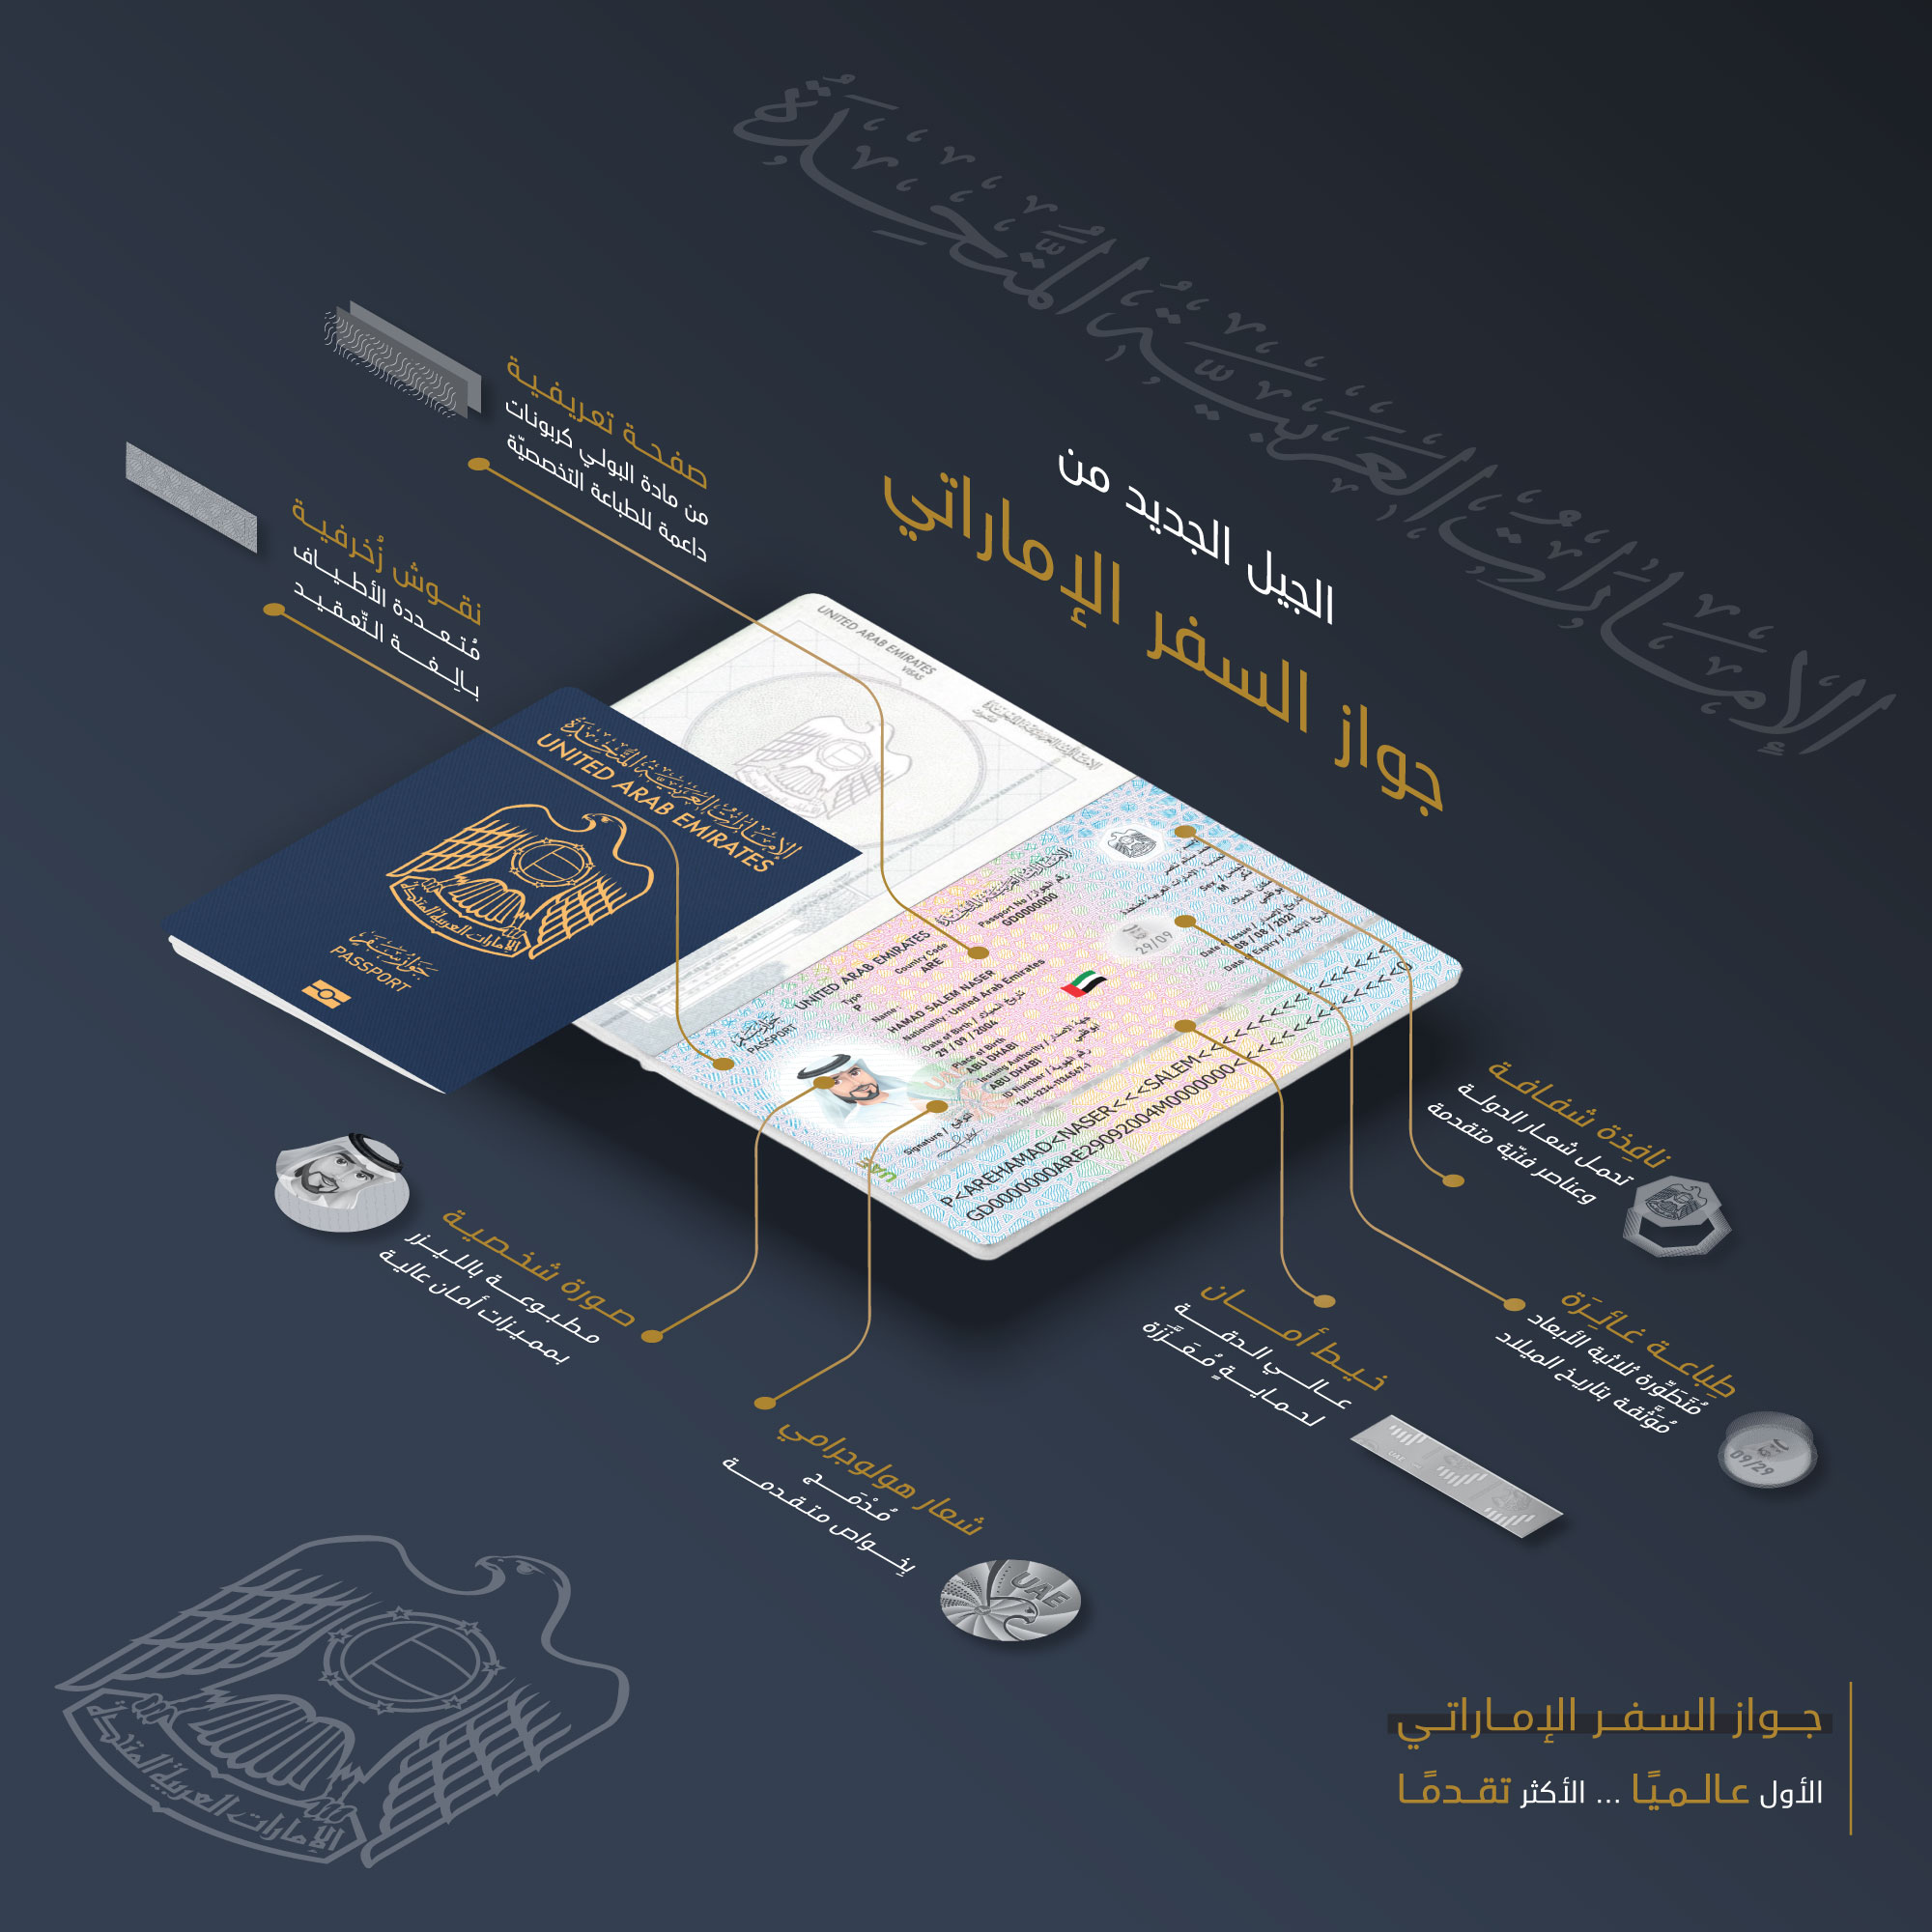 الهيئة الاتحادية للهوية والجنسية والجمارك وأمن المنافذ تصدر الجيل الجديد من جواز السفر الإماراتي بدءً من سبتمبر القادم